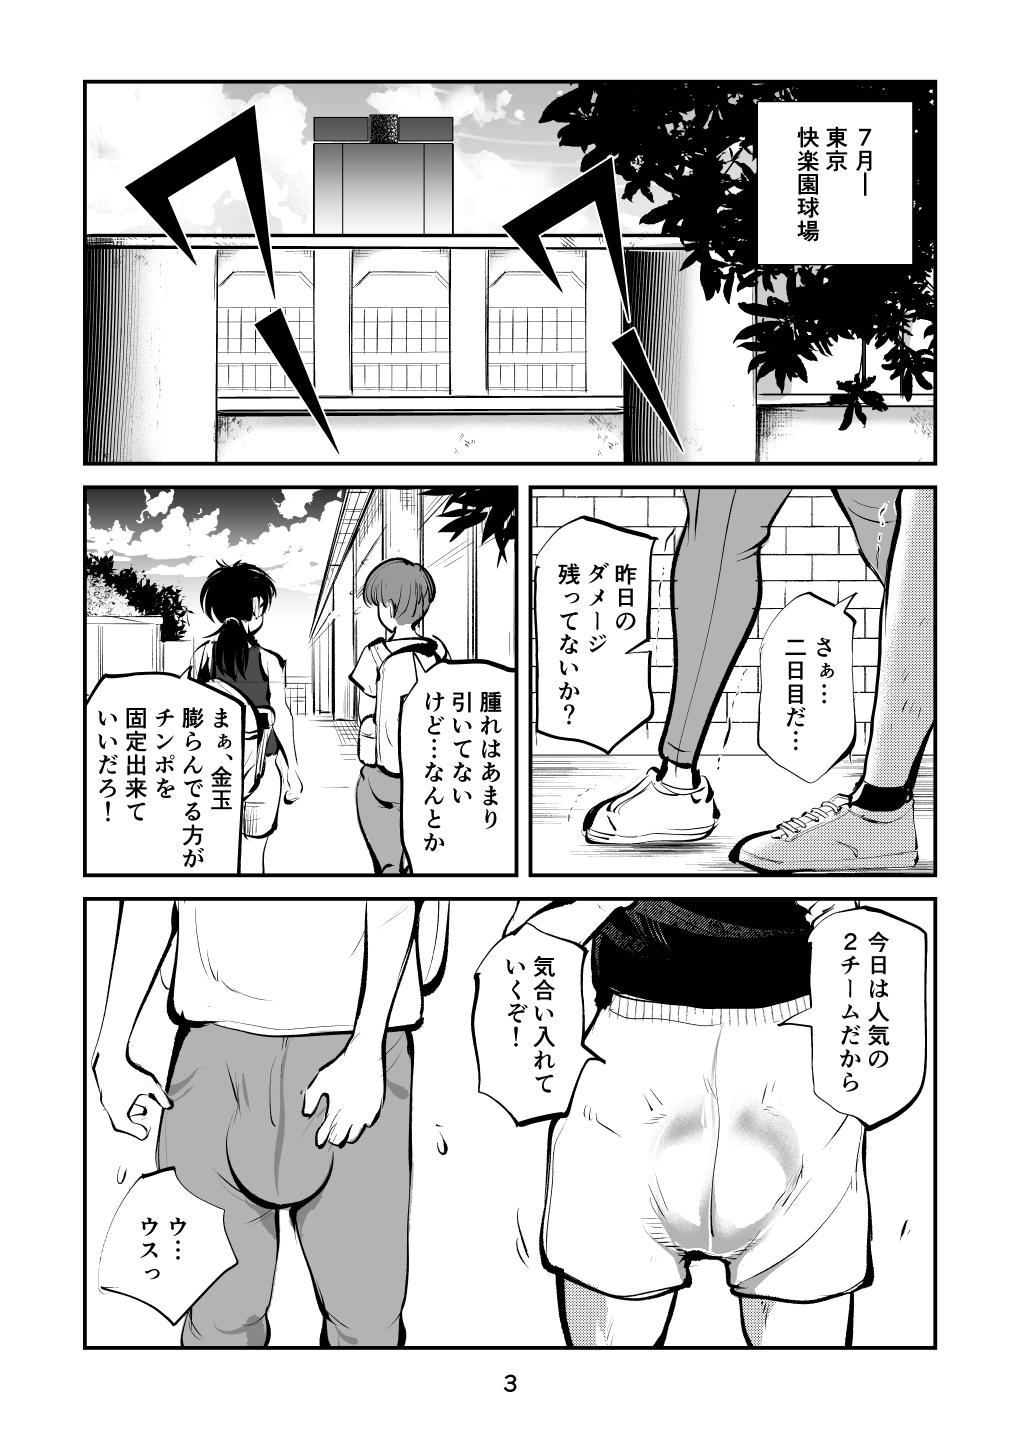 Banheiro Kinkeri Cheer Girl VS Tosatsuma Shakai Hito Cheer Girl-hen - Original Amador - Page 3